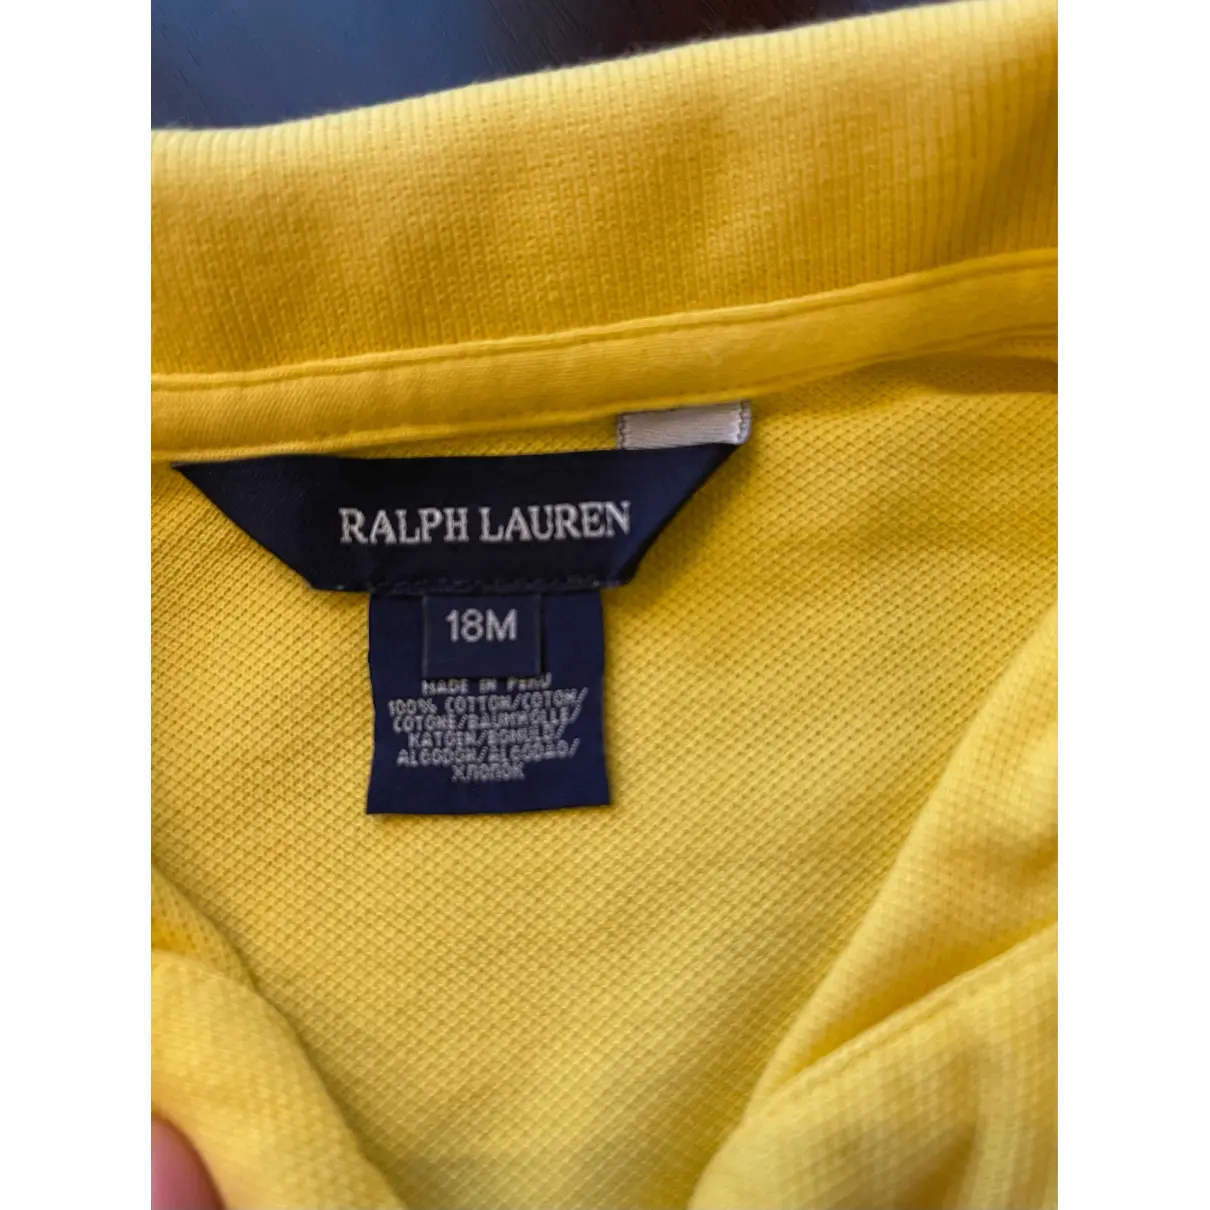 Buy Ralph Lauren Mini dress online